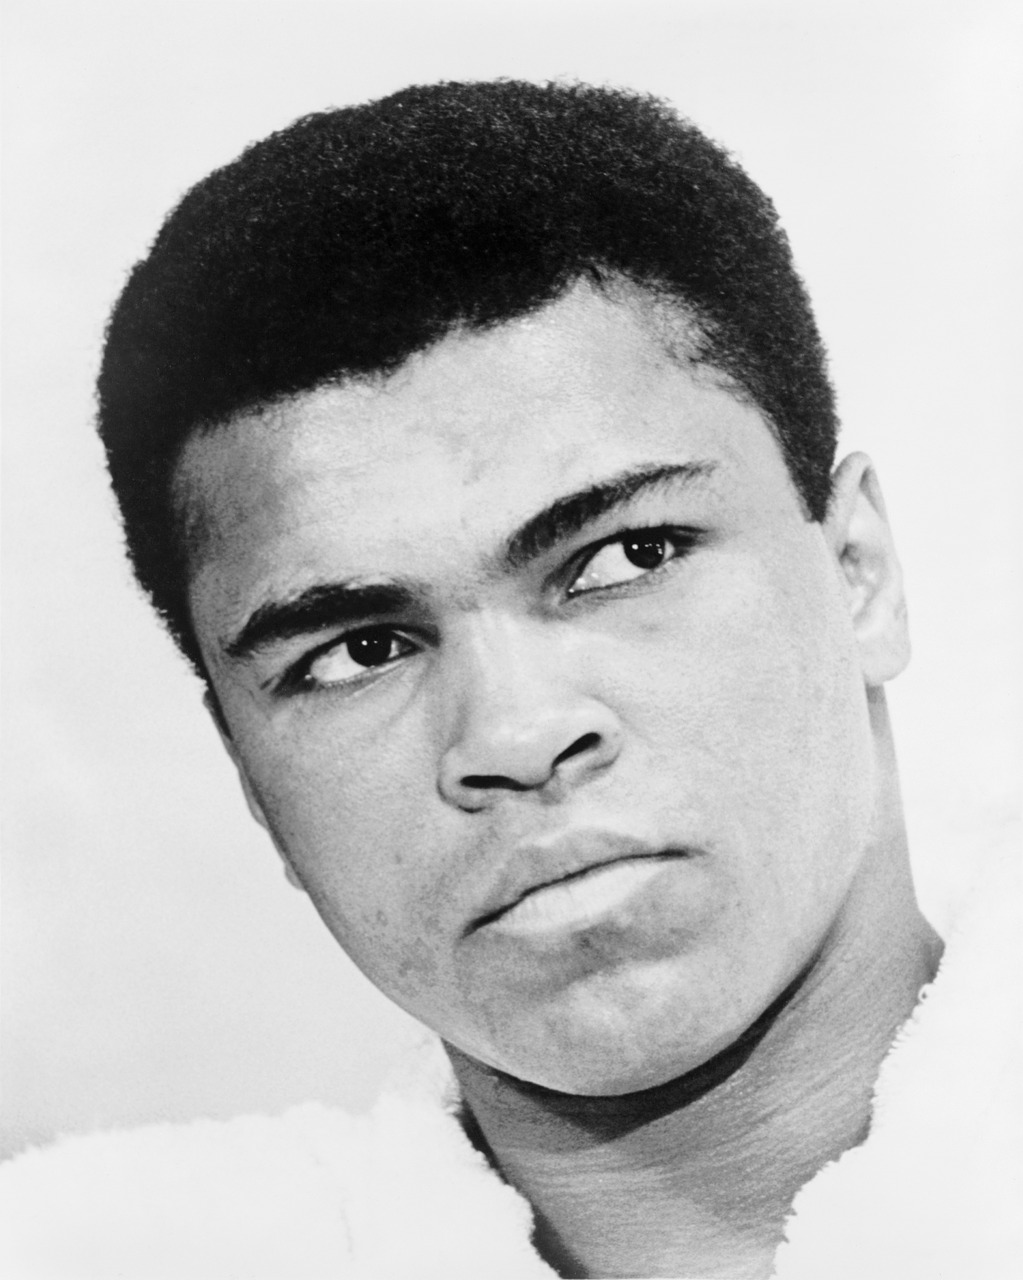 Muhammad Ali - Cassius Clay